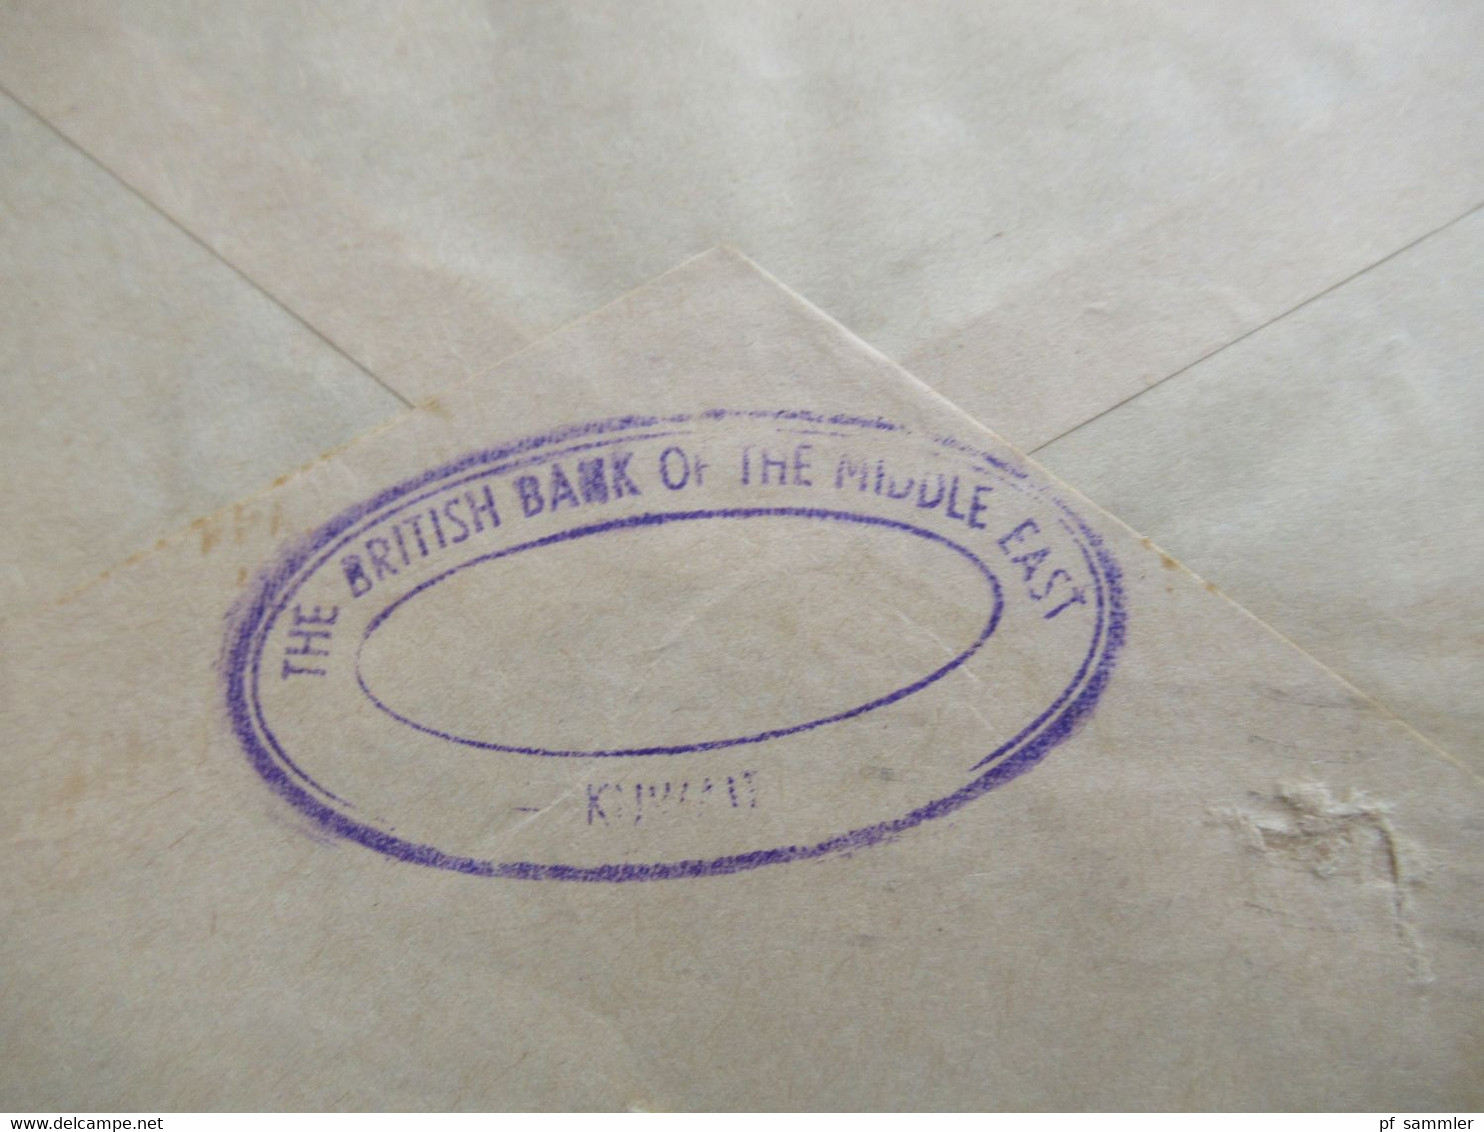 Kuwait 1950er Jahre ?! Air Mail / Luftpost Beleg Umschlag Stempel The British Bank Of The Middle East Kuwait - Koeweit